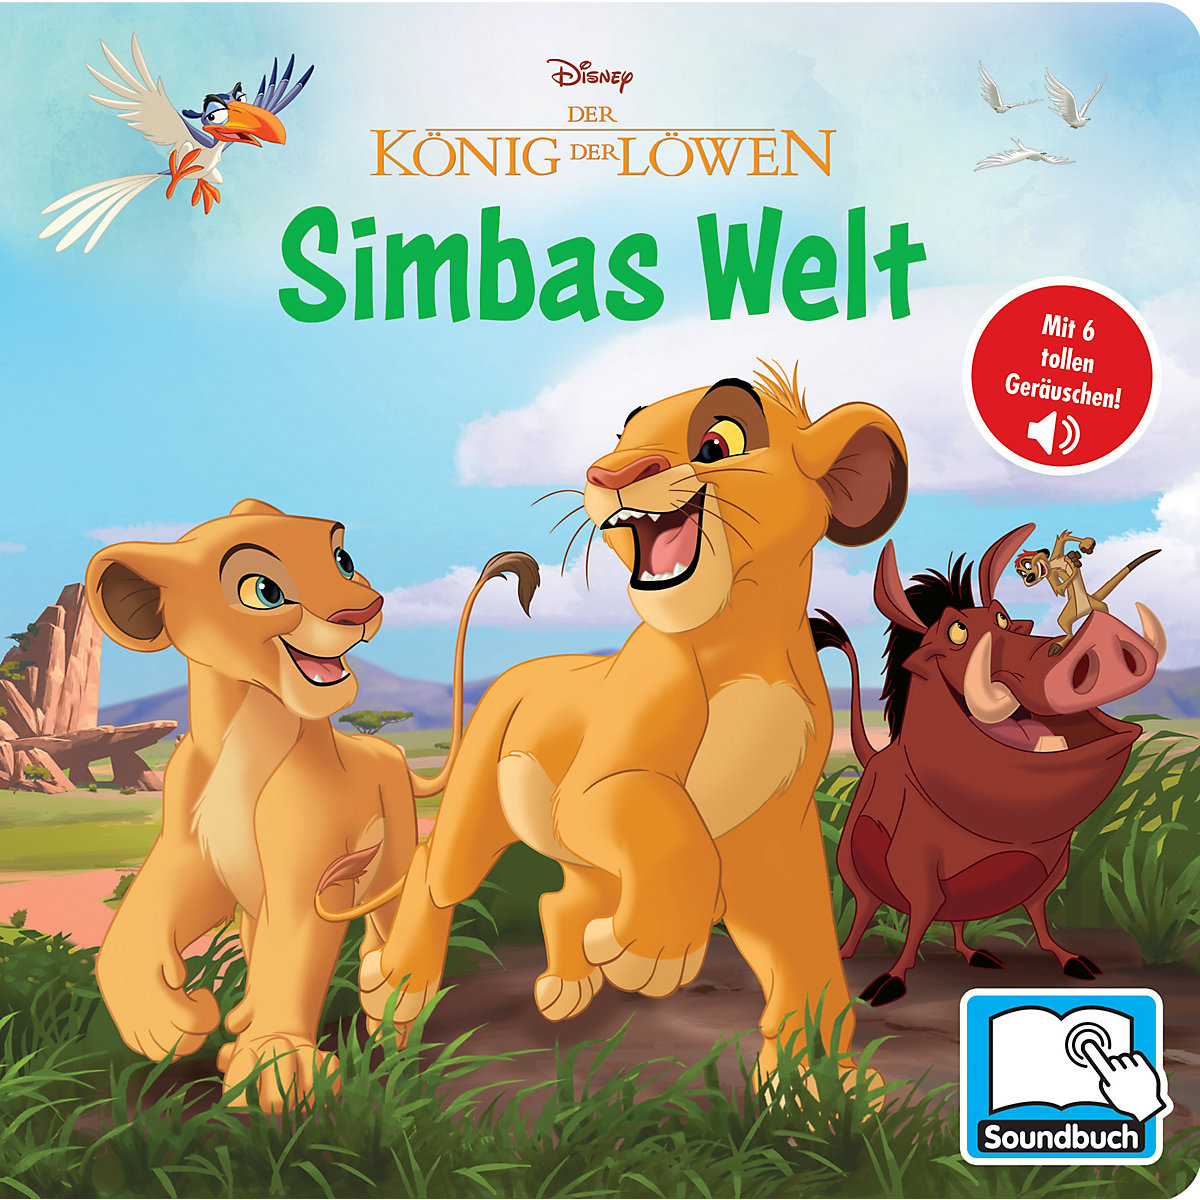 Mein erstes Soundbuch „Disney Der König der Löwen Simbas Welt“